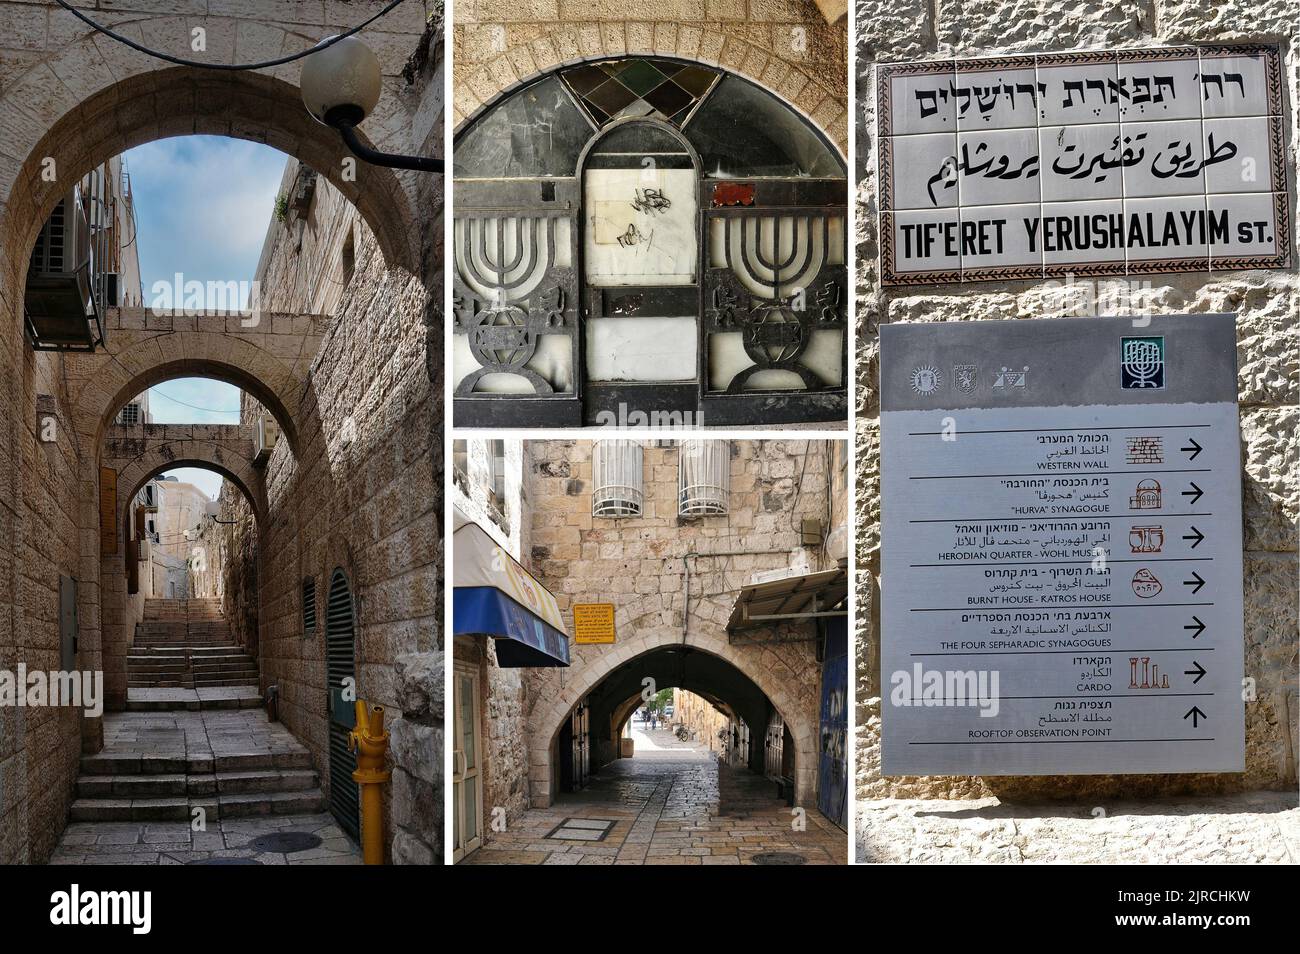 El barrio judío es uno de los cuatro barrios tradicionales de la Ciudad Vieja de Jerusalén (1) Foto de stock